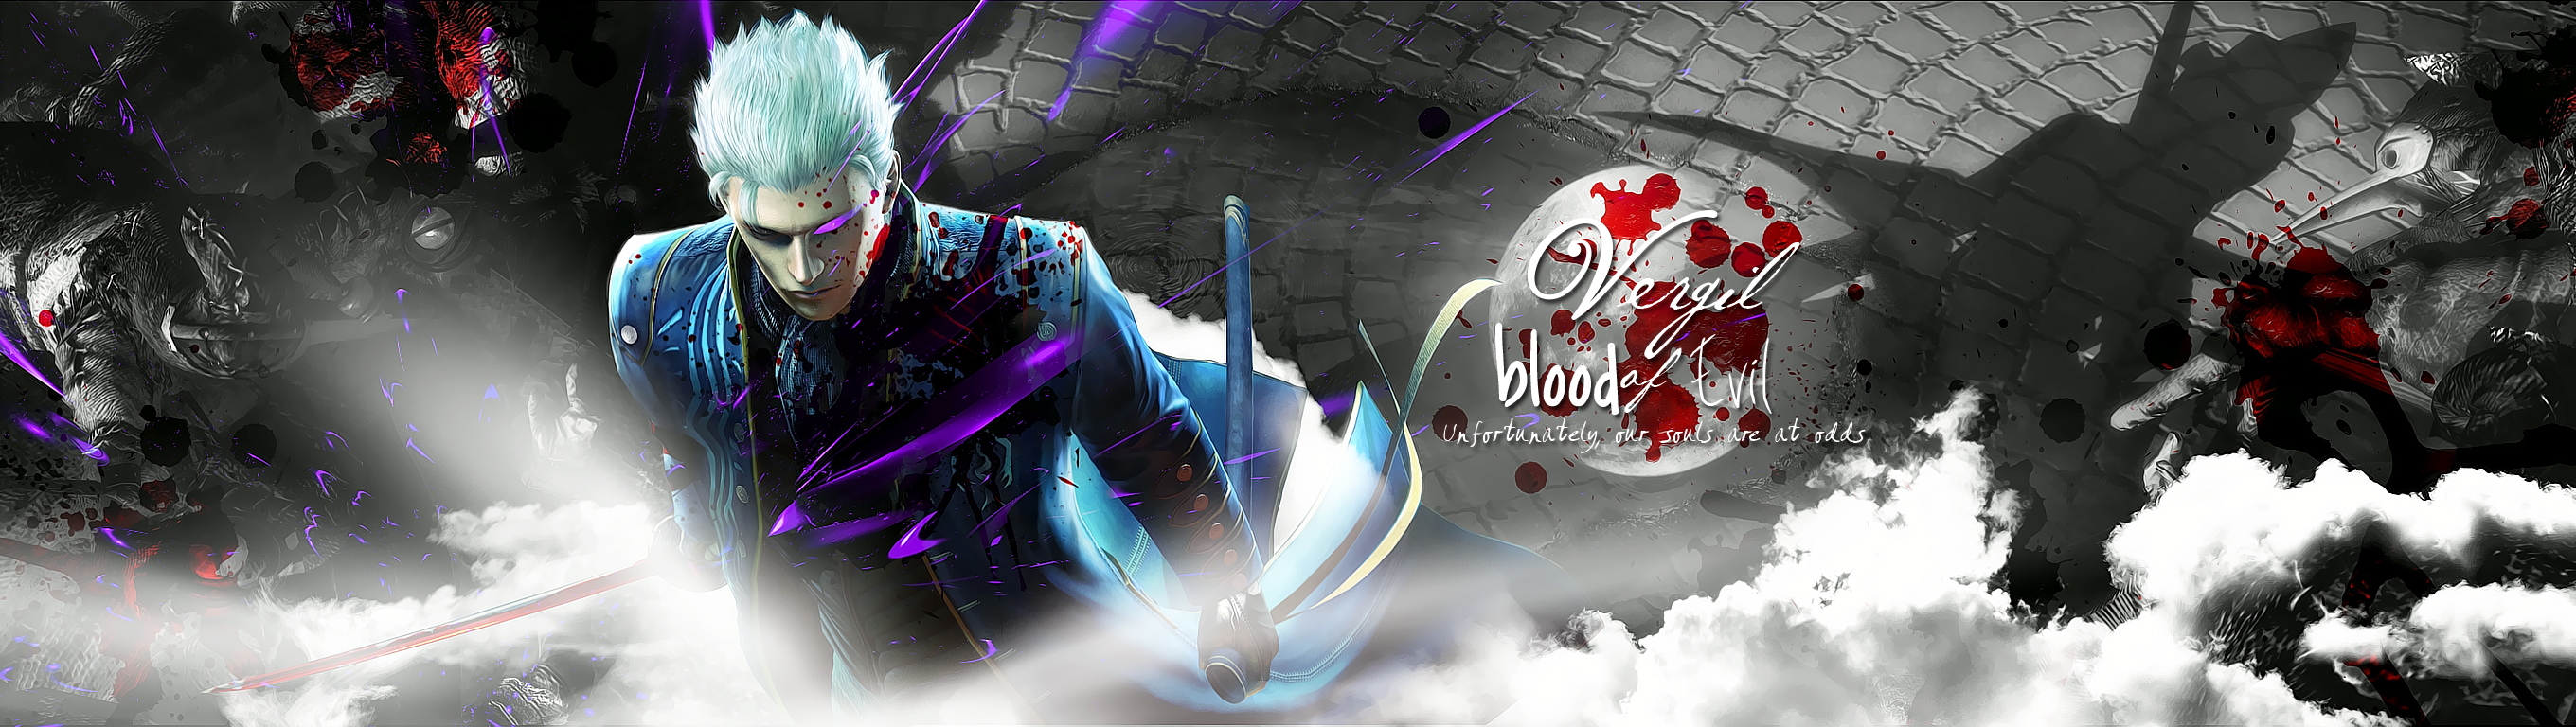 vergil_blood_of_evil_by_incneetx666-d9c5nv3.jpg